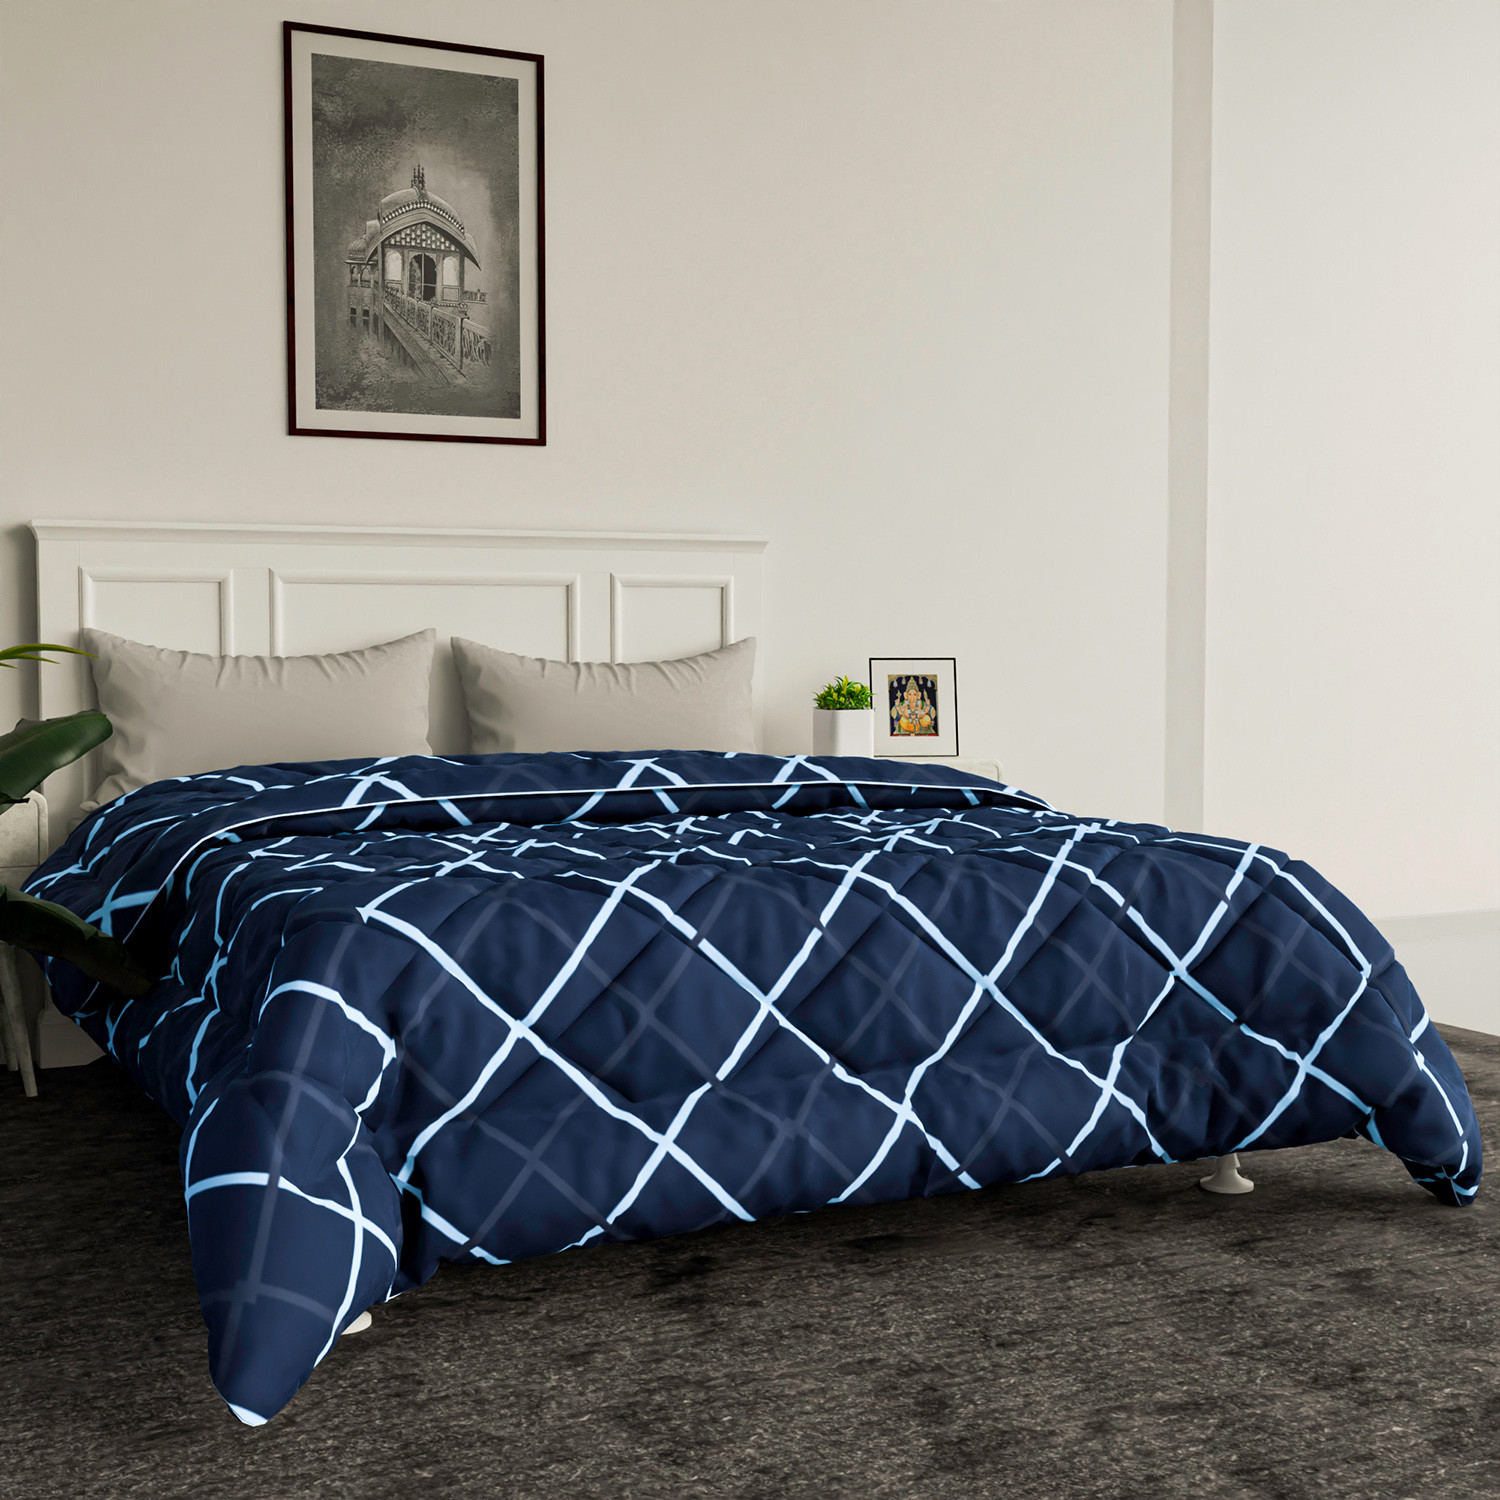 Kuber Industries Comforter for Double Bed|Microfiber Winter Comforter for Double Bed|220 GSM Reversible Zig Zag Design Comforter|AC Quilt|Dohar (Blue)